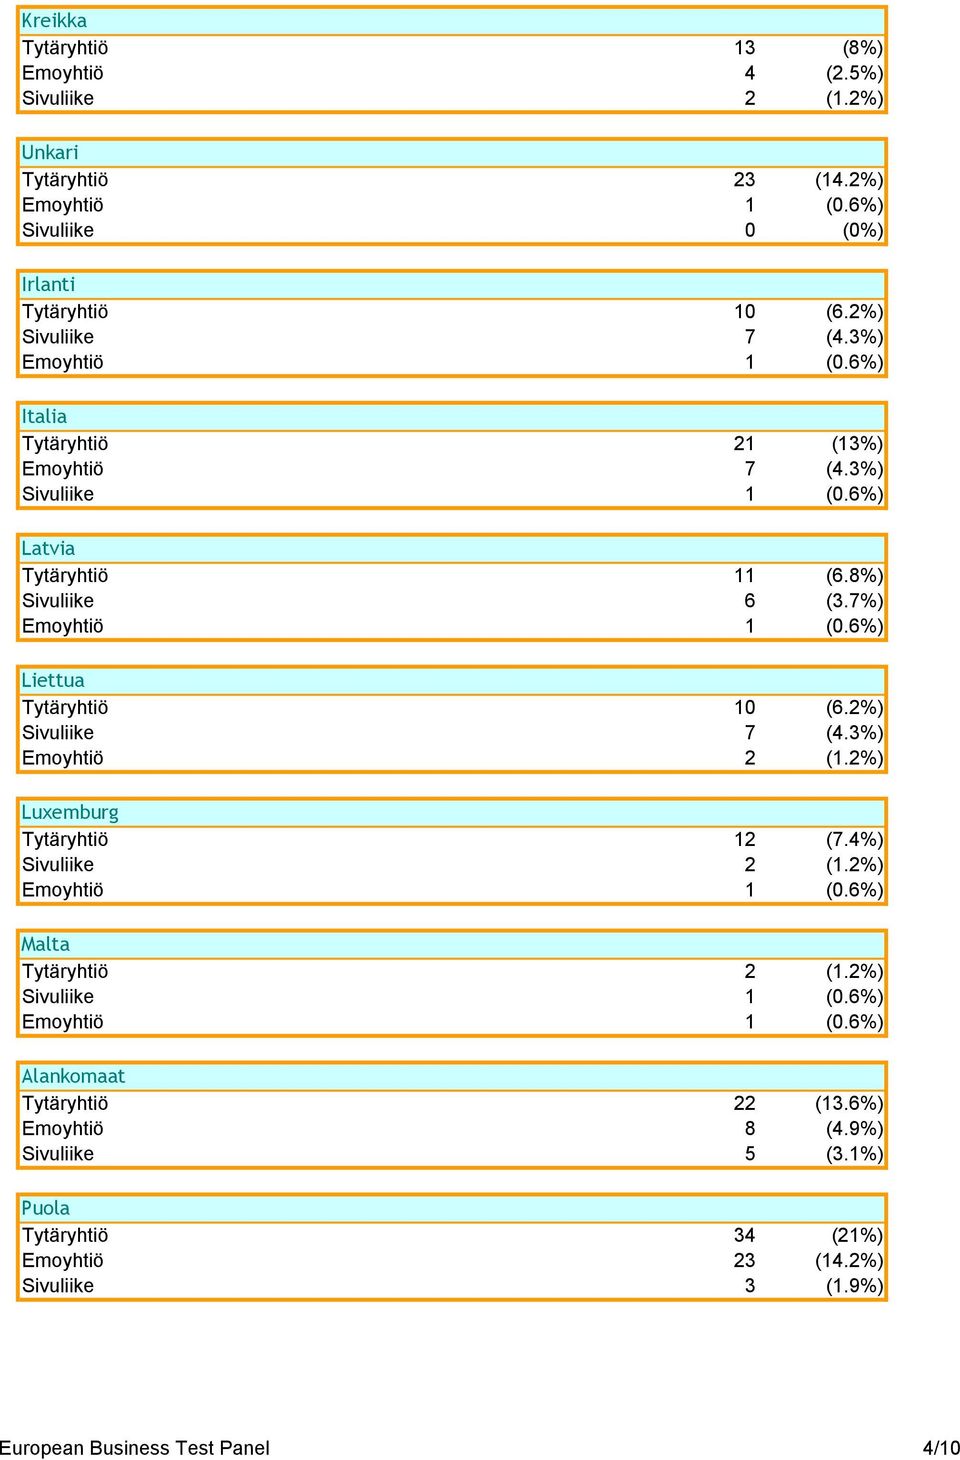 7%) Liettua Tytäryhtiö 10 (6.2%) Sivuliike 7 (4.3%) Emoyhtiö 2 (1.2%) Luxemburg Tytäryhtiö 12 (7.4%) Sivuliike 2 (1.2%) Malta Tytäryhtiö 2 (1.